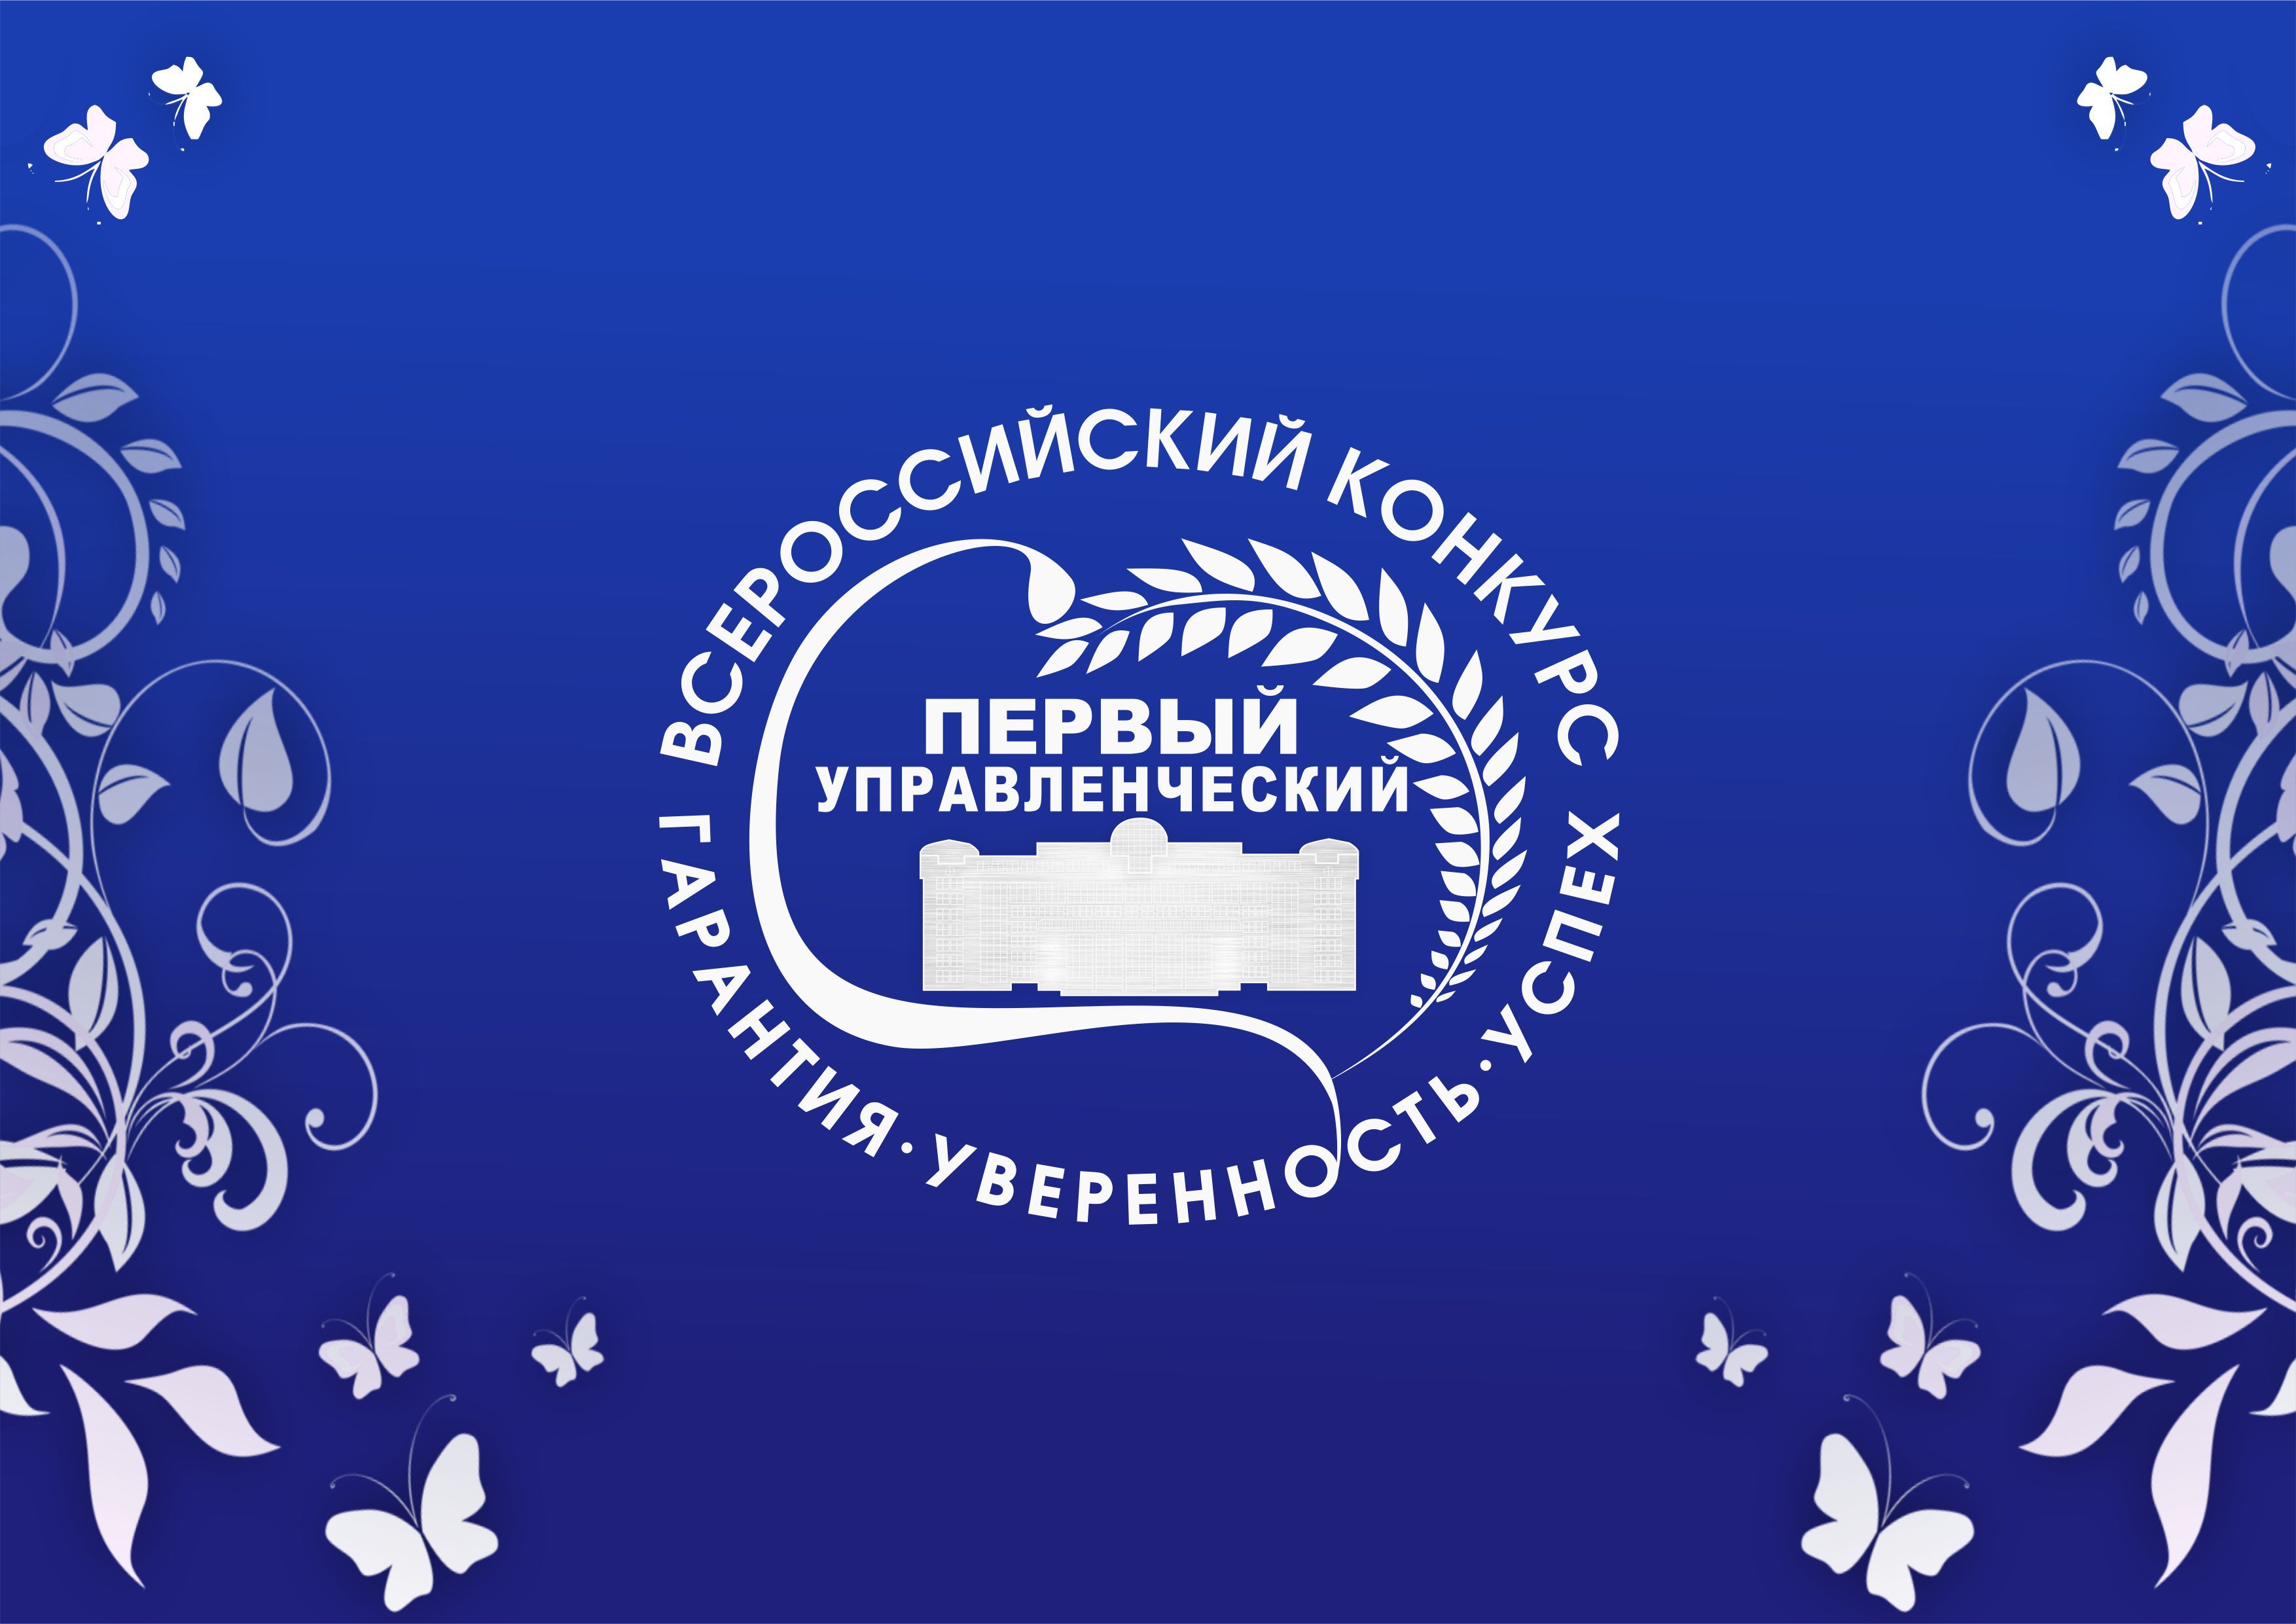 Астраханцев приглашают к участию во II Всероссийском конкурсе «Первый управленческий»